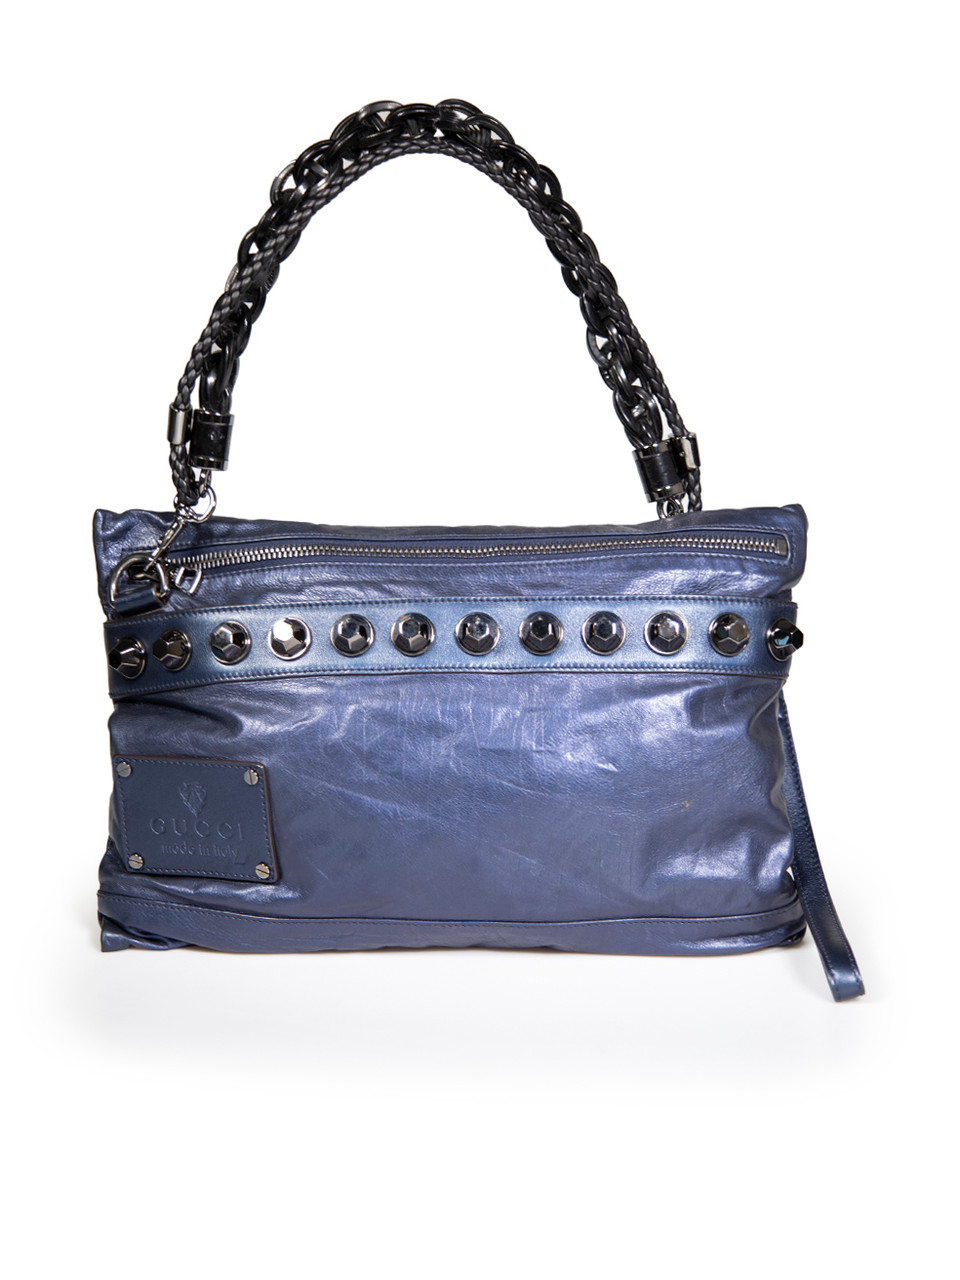 Gucci Blue Metallic Leather Studded Shoulder Bag